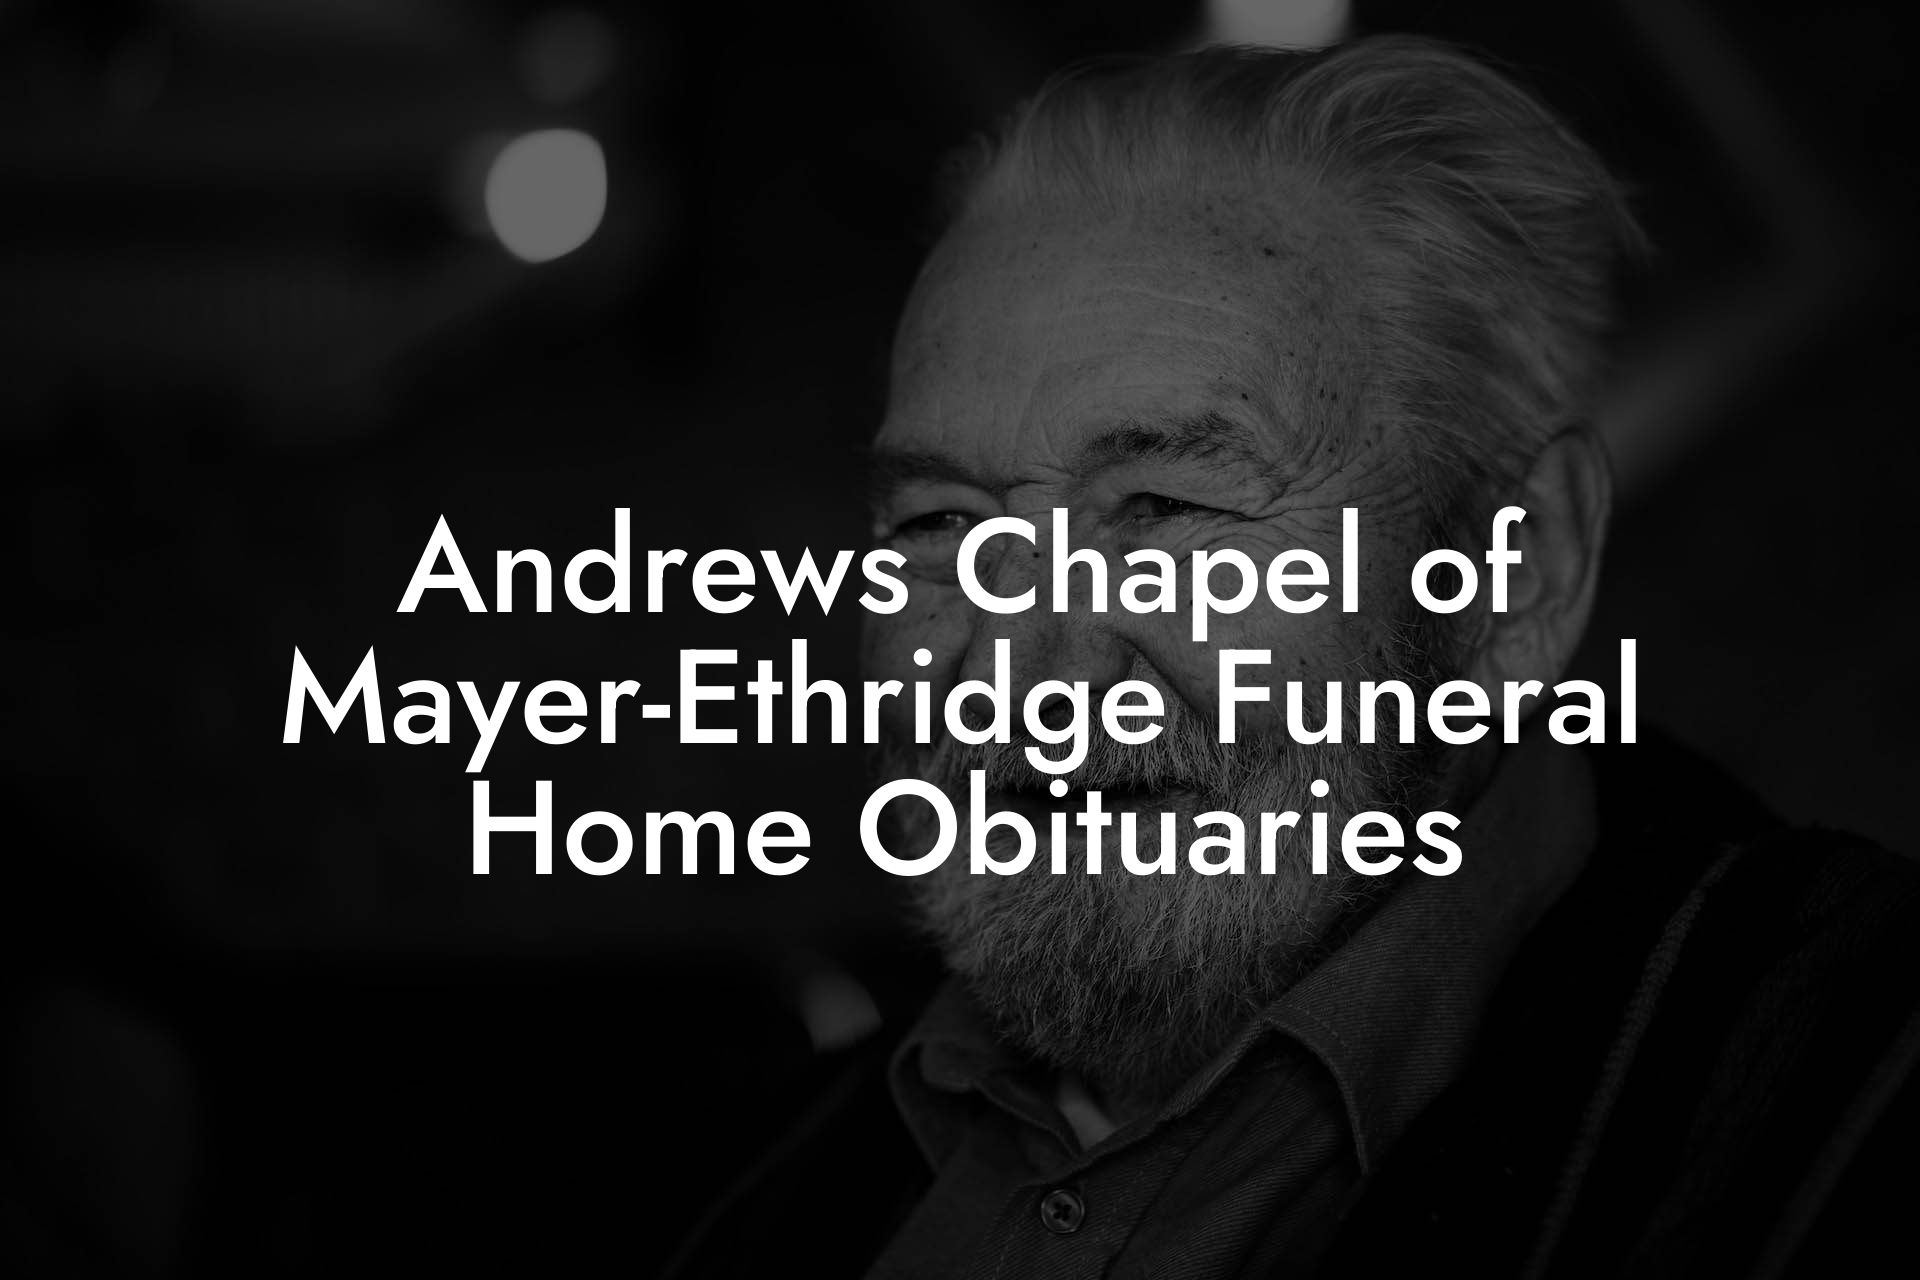 Andrews Chapel of Mayer-Ethridge Funeral Home Obituaries